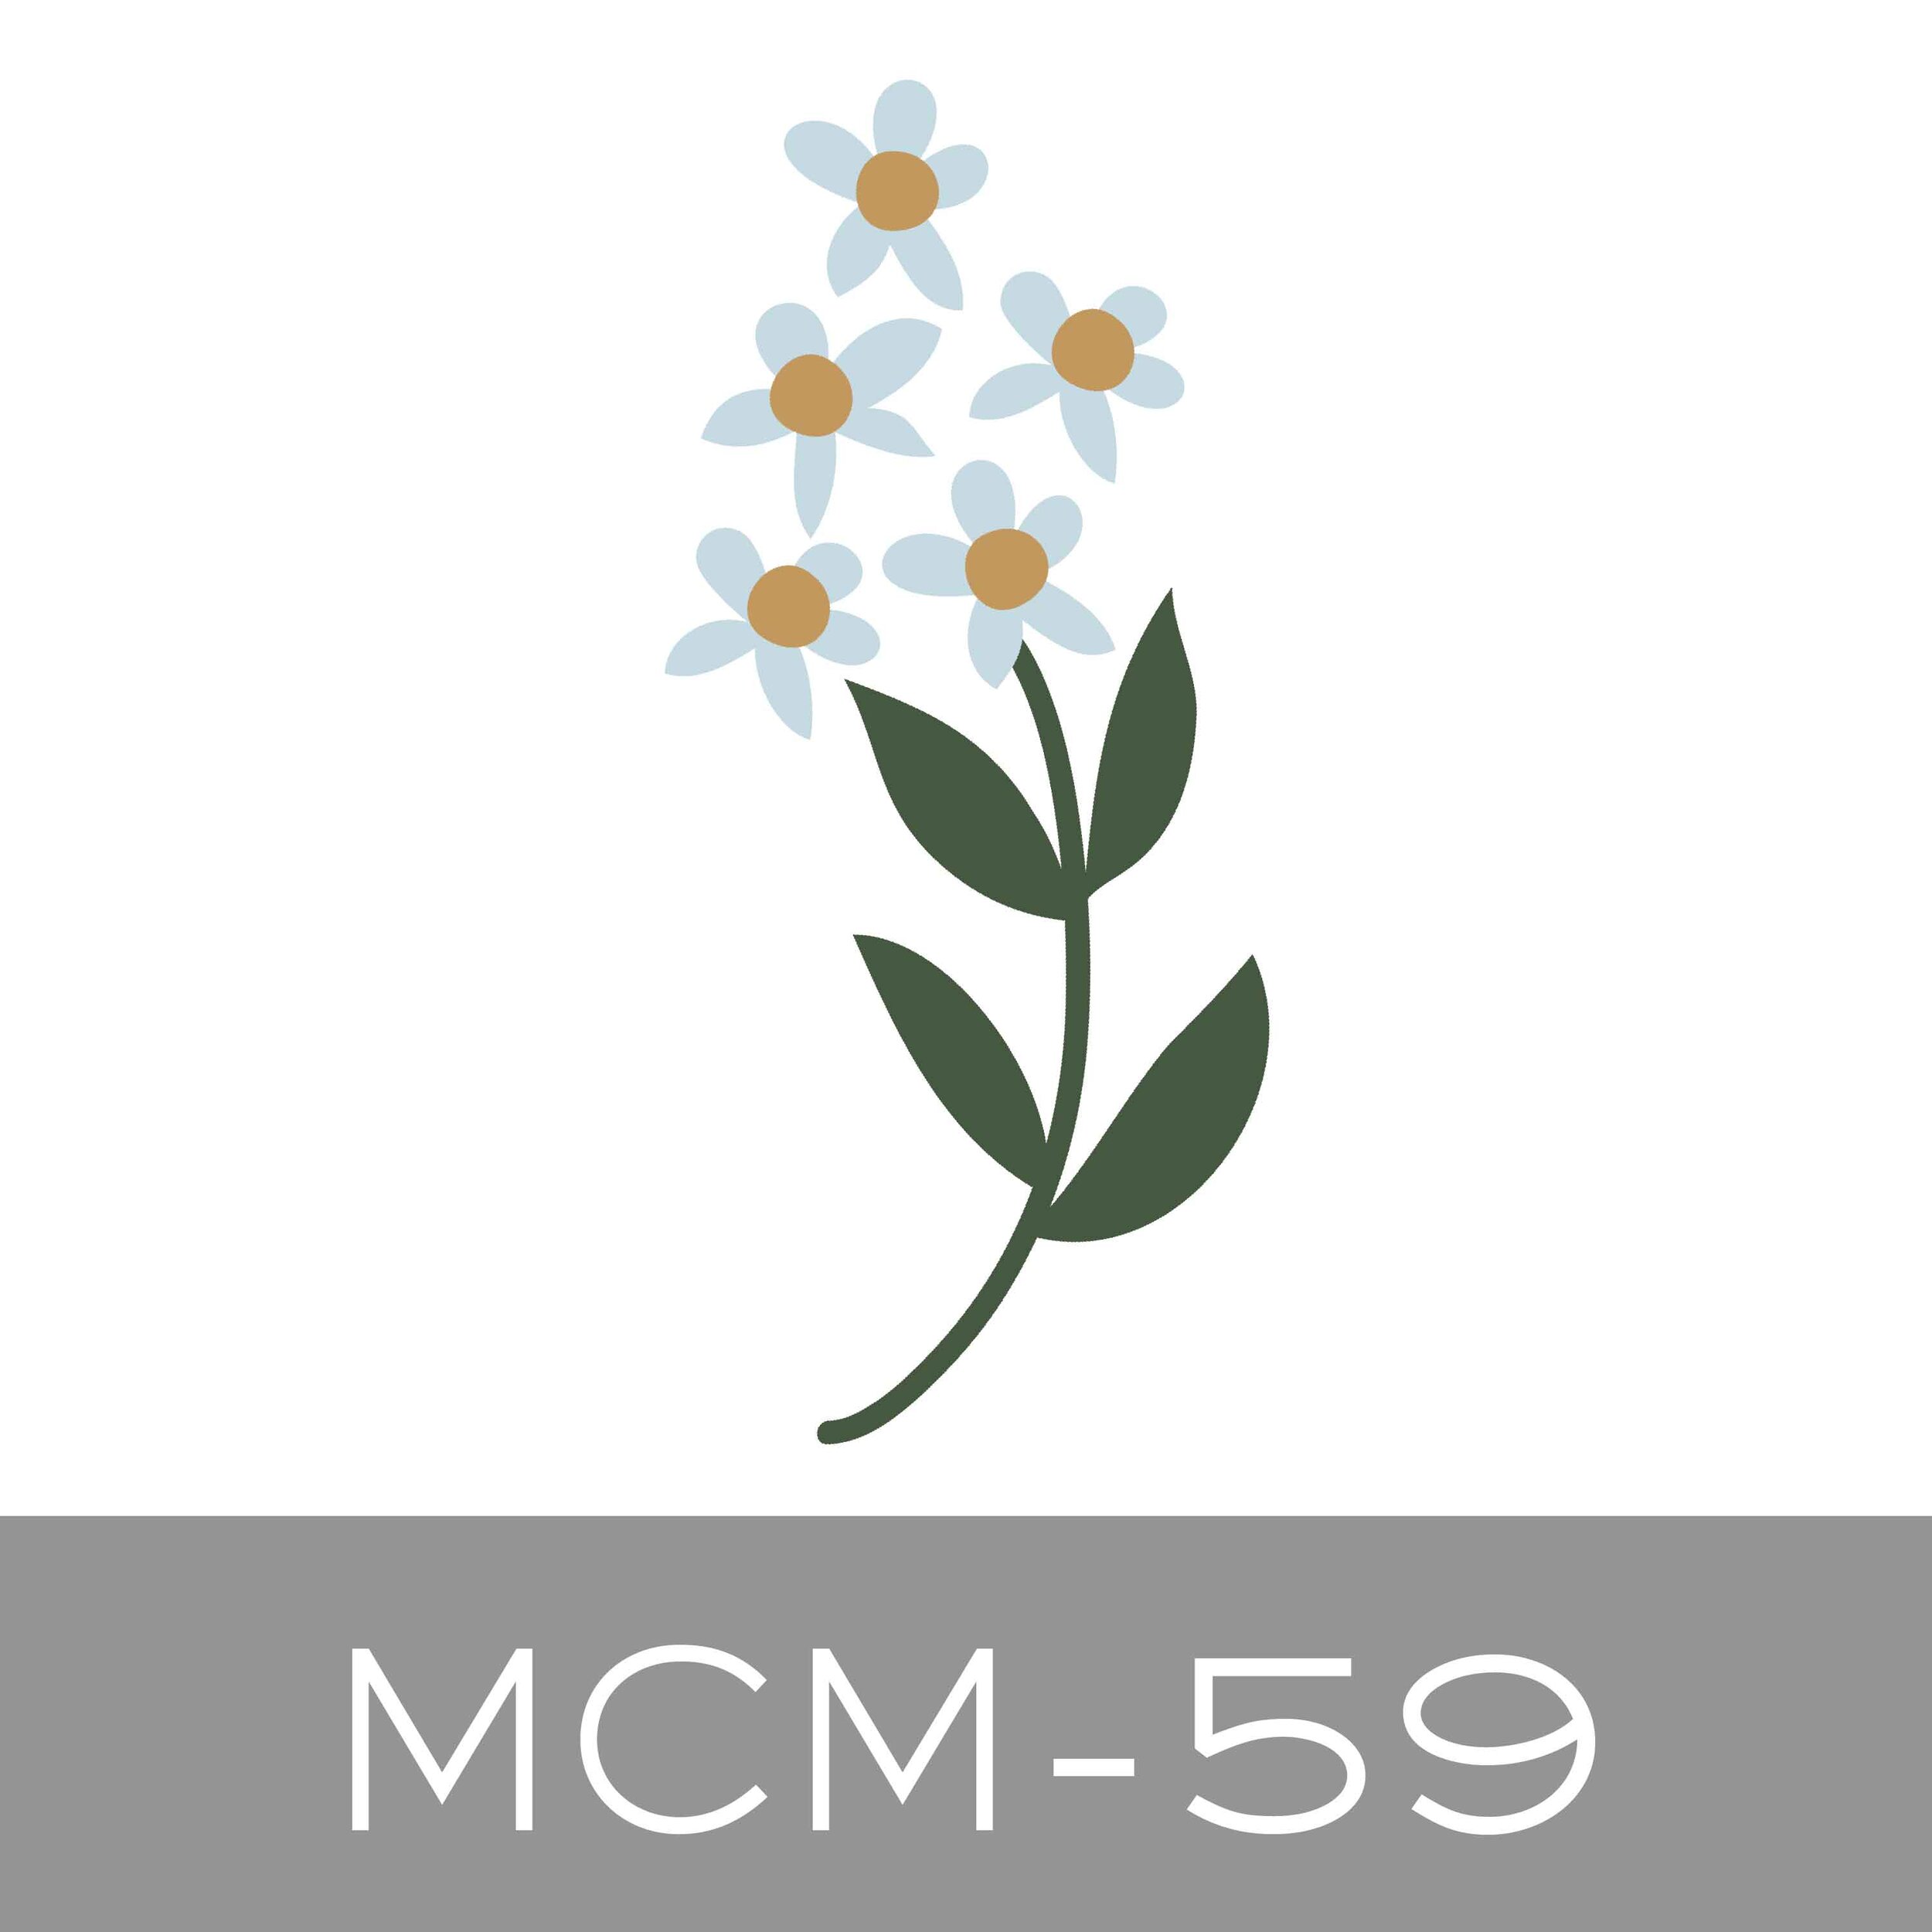 MCM-59.jpg